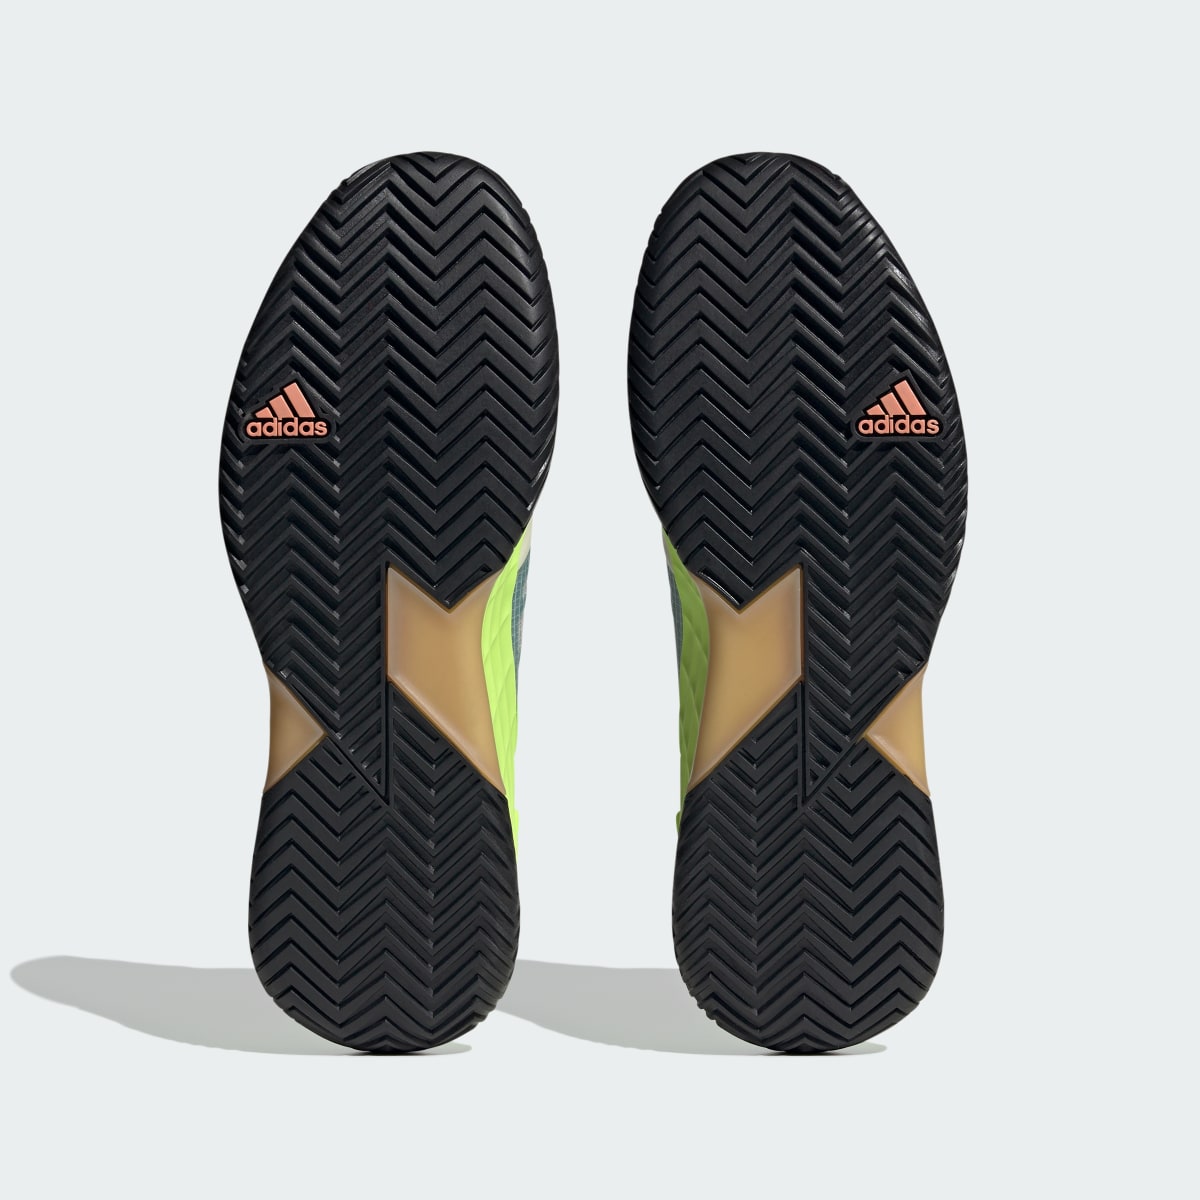 Adidas Adizero Ubersonic 4.1 Tennis Shoes. 4